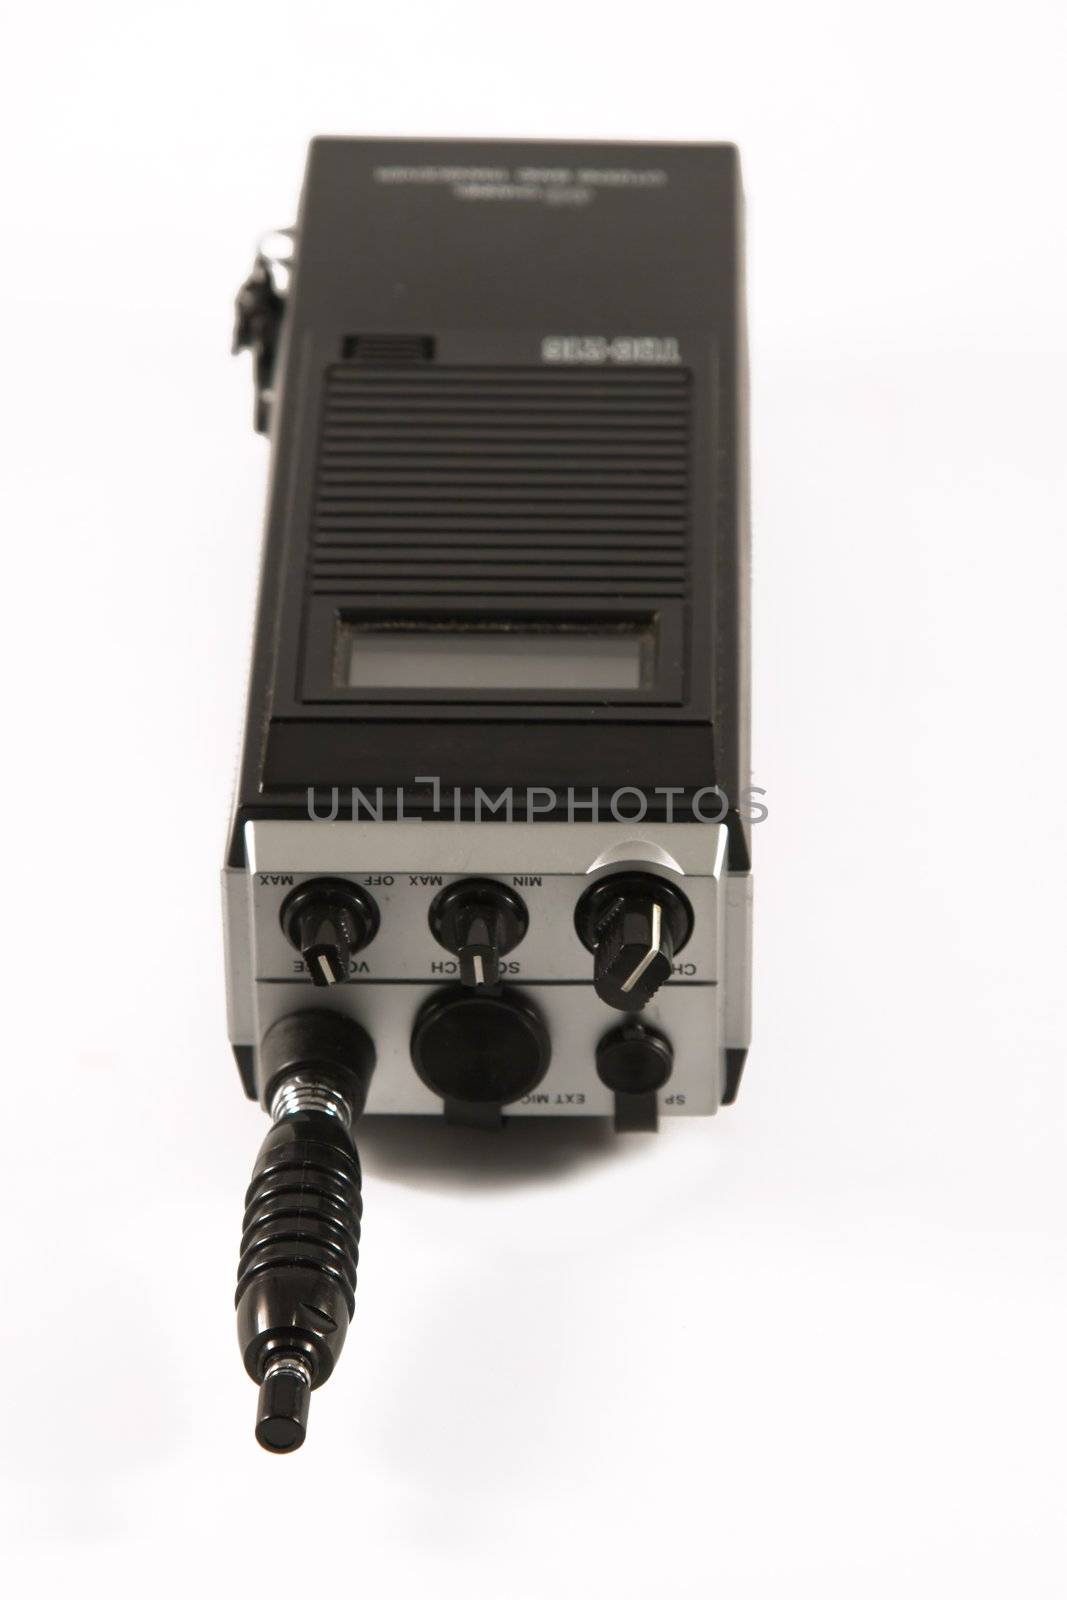 Portable CB radio by timscottrom